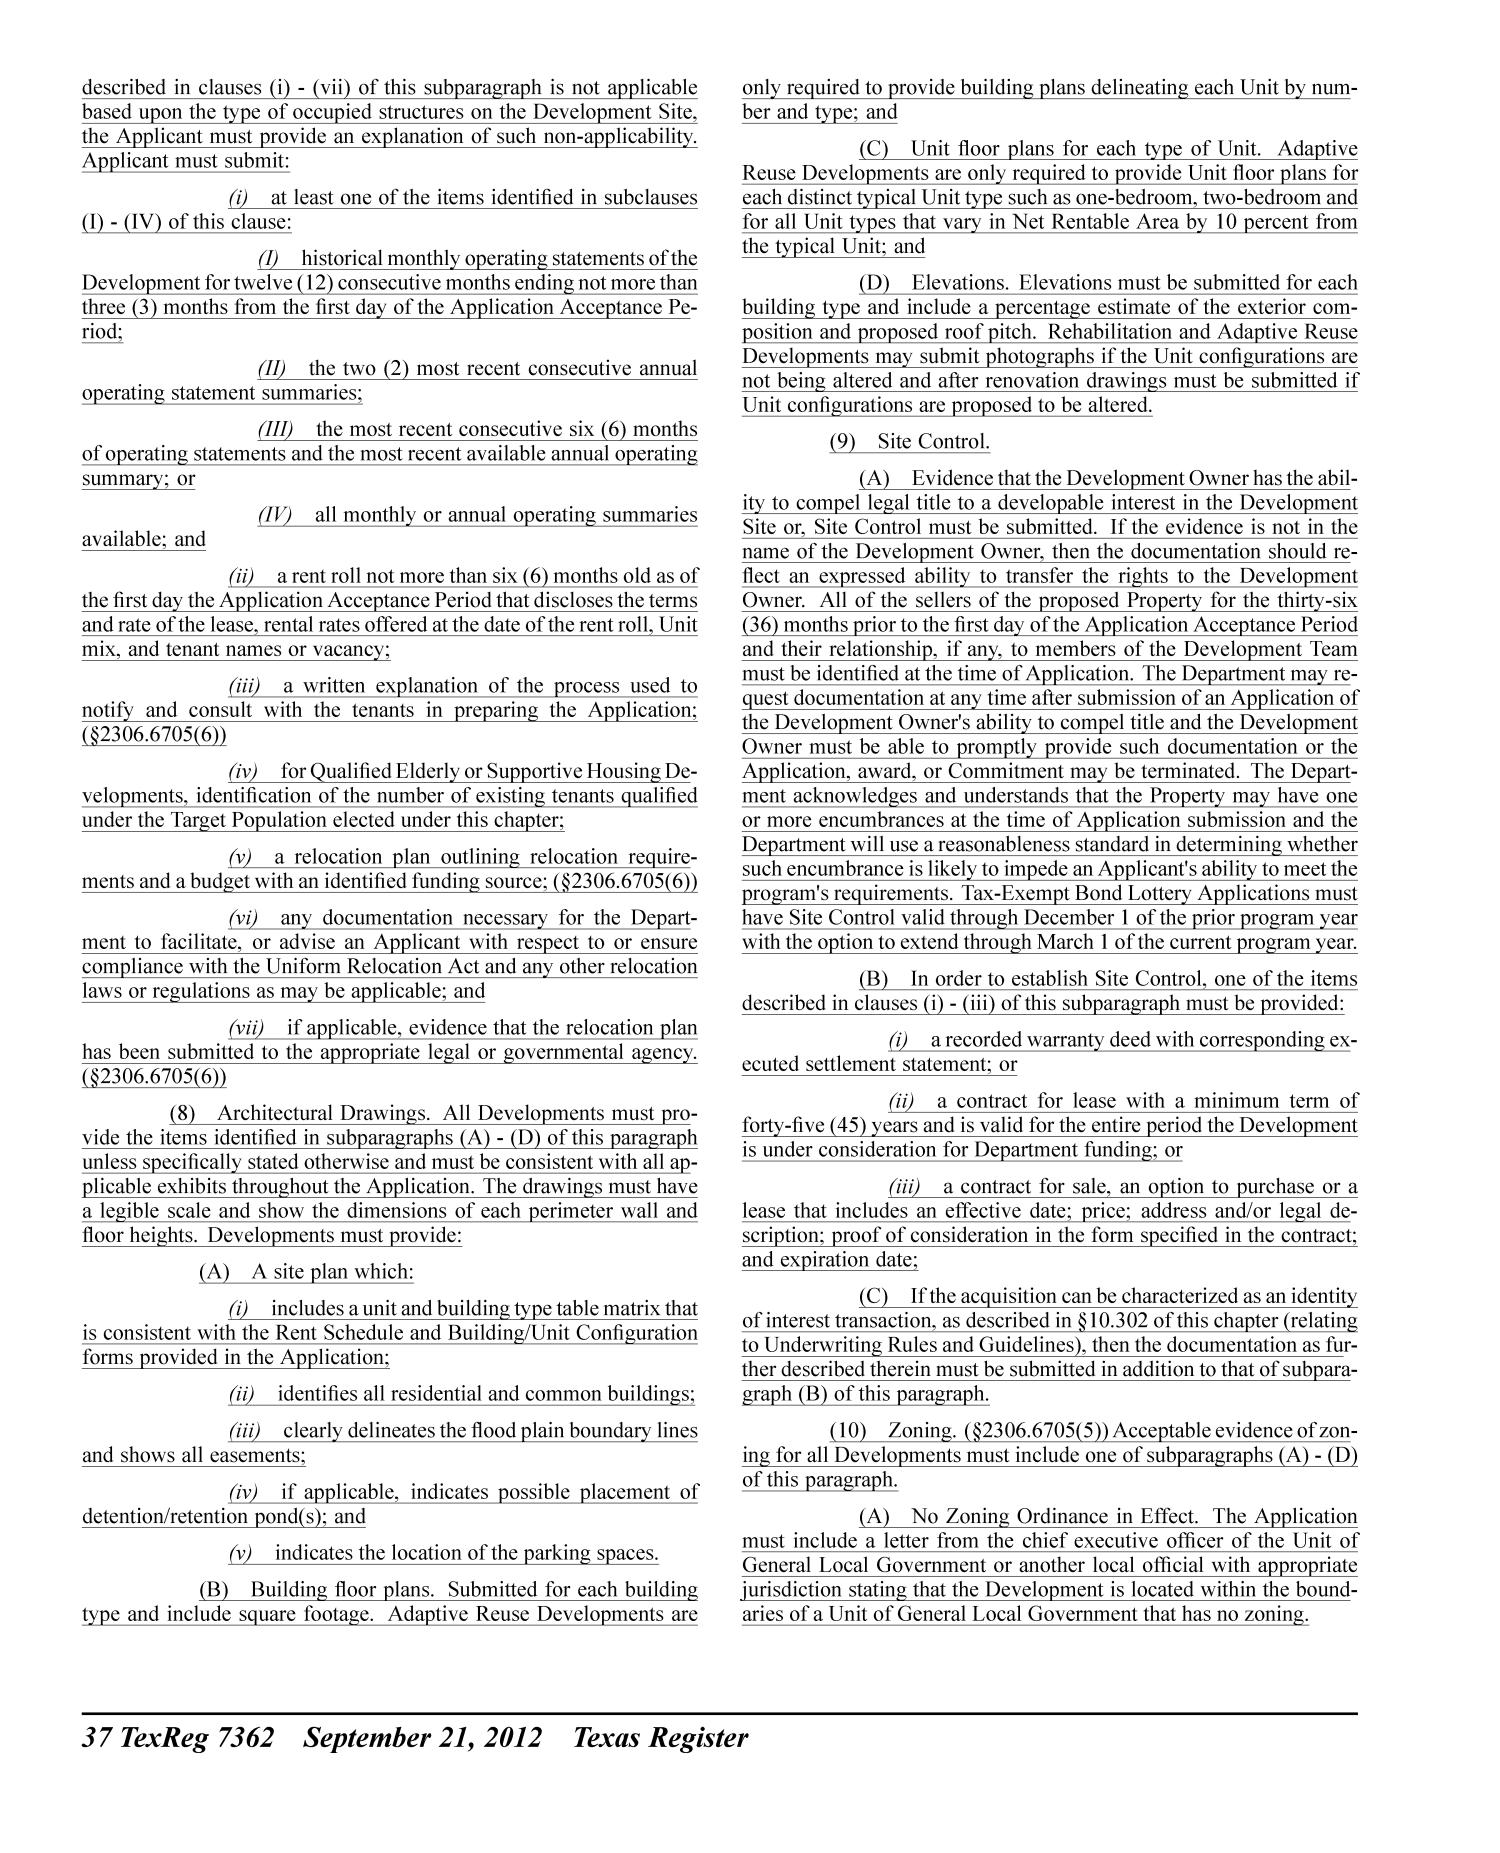 Texas Register, Volume 37, Number 38, Pages 7327-7532, September 21, 2012
                                                
                                                    7362
                                                